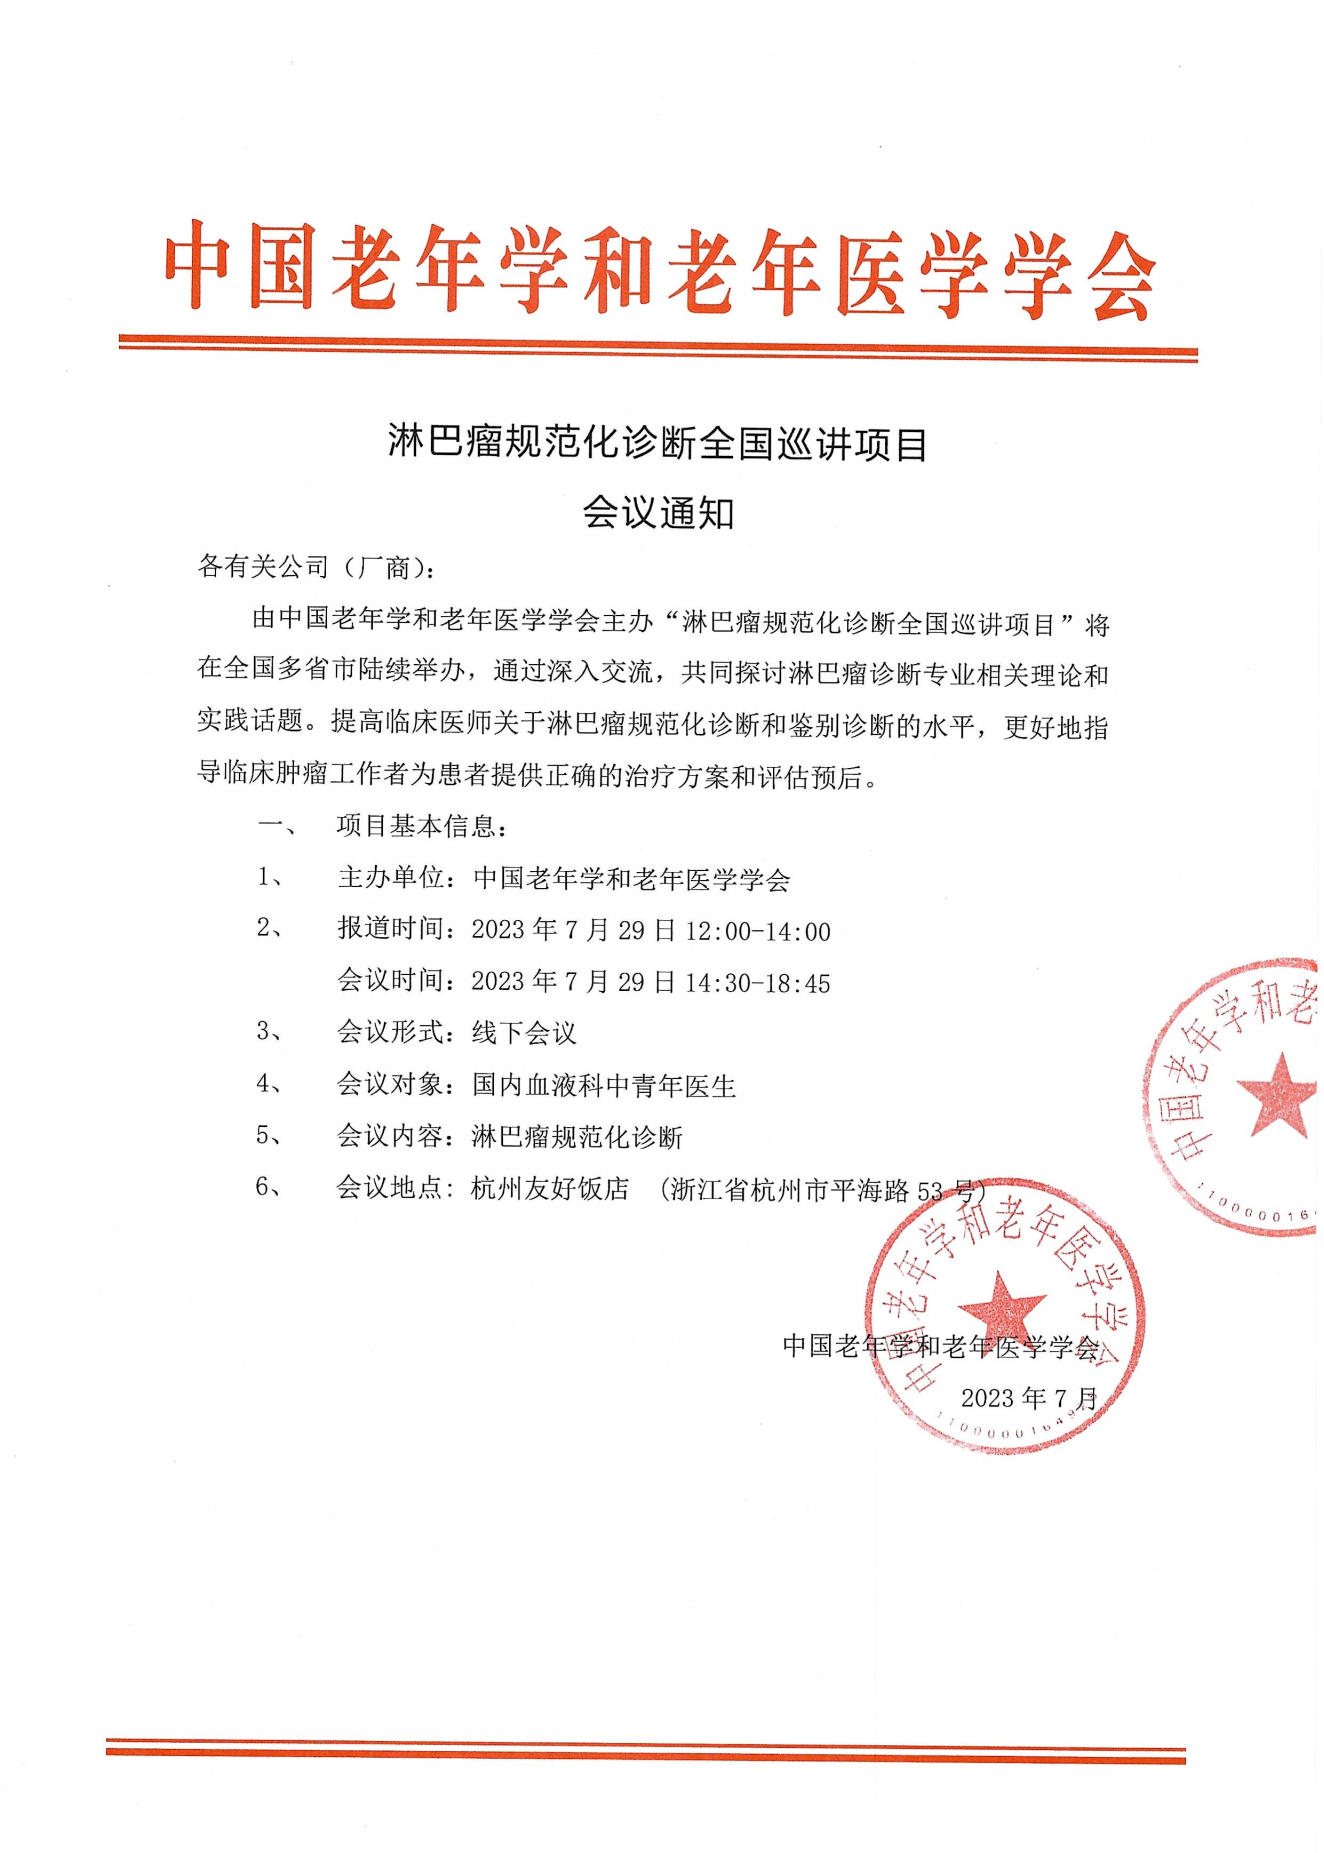 杭州-淋巴瘤规范化诊断全国巡讲项目通知0729_00.png